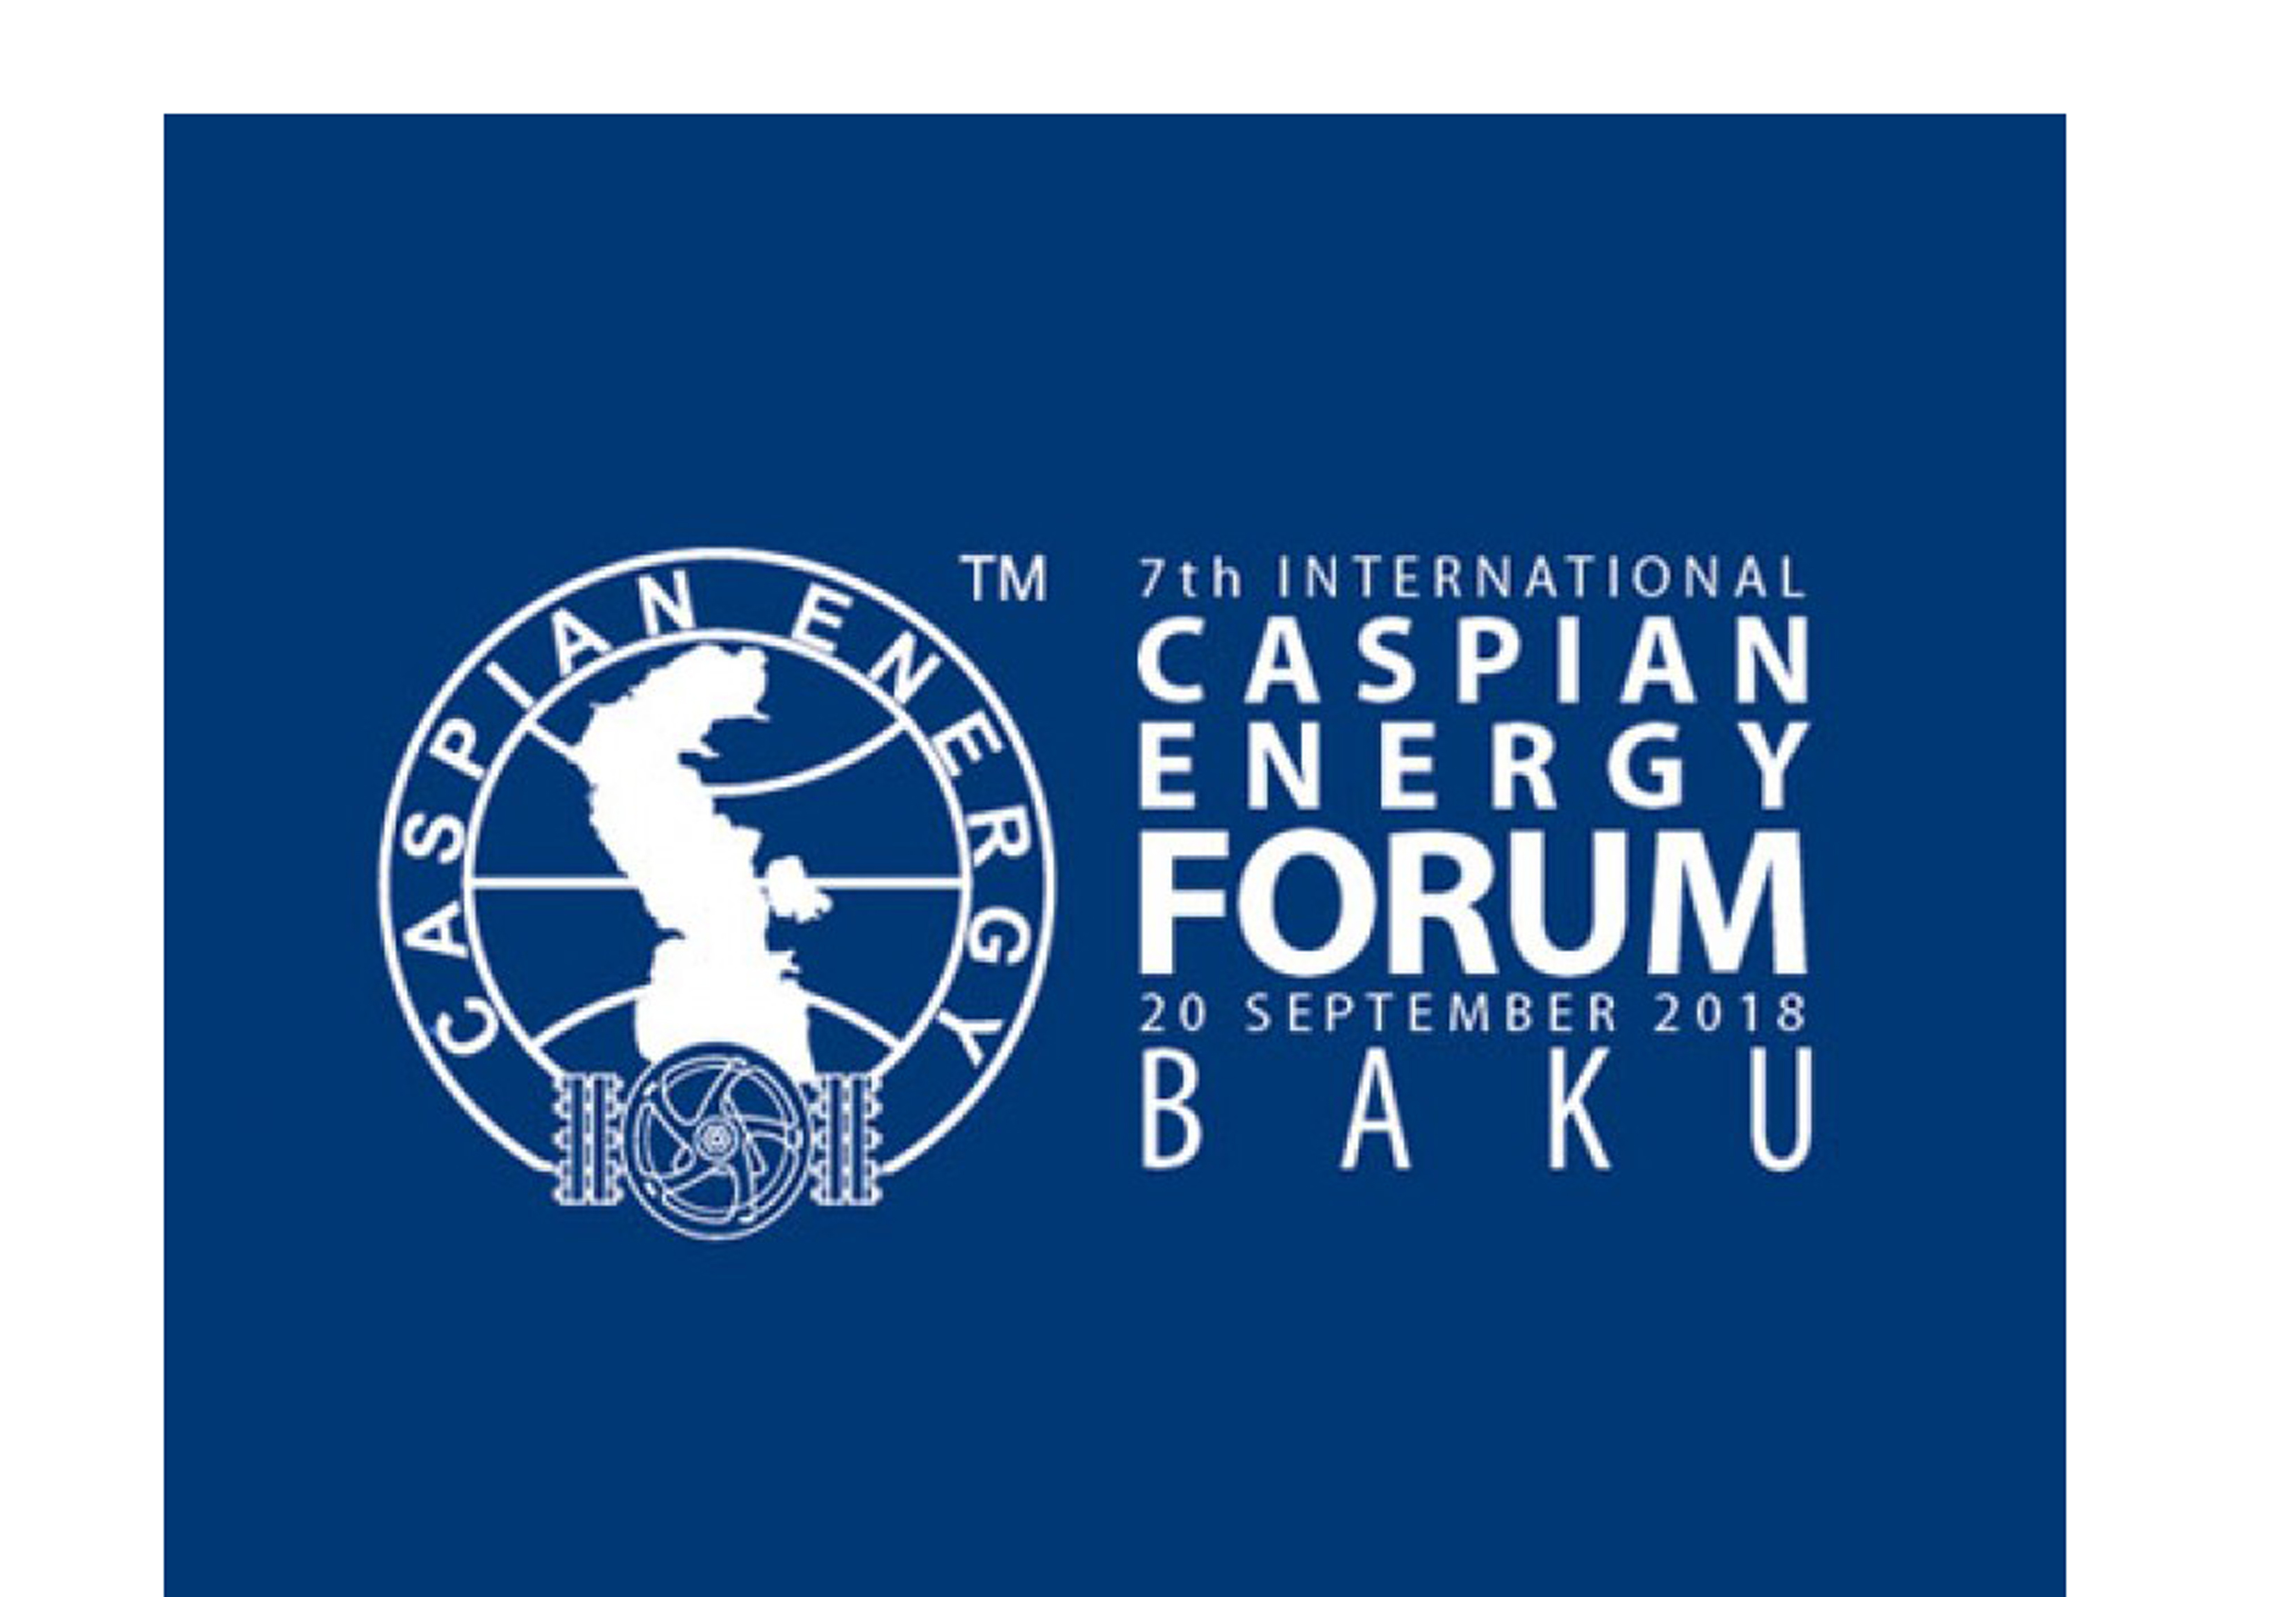 Государственный таможенный комитетофициально поддерживаетCaspian Energy Forum Baku 2018